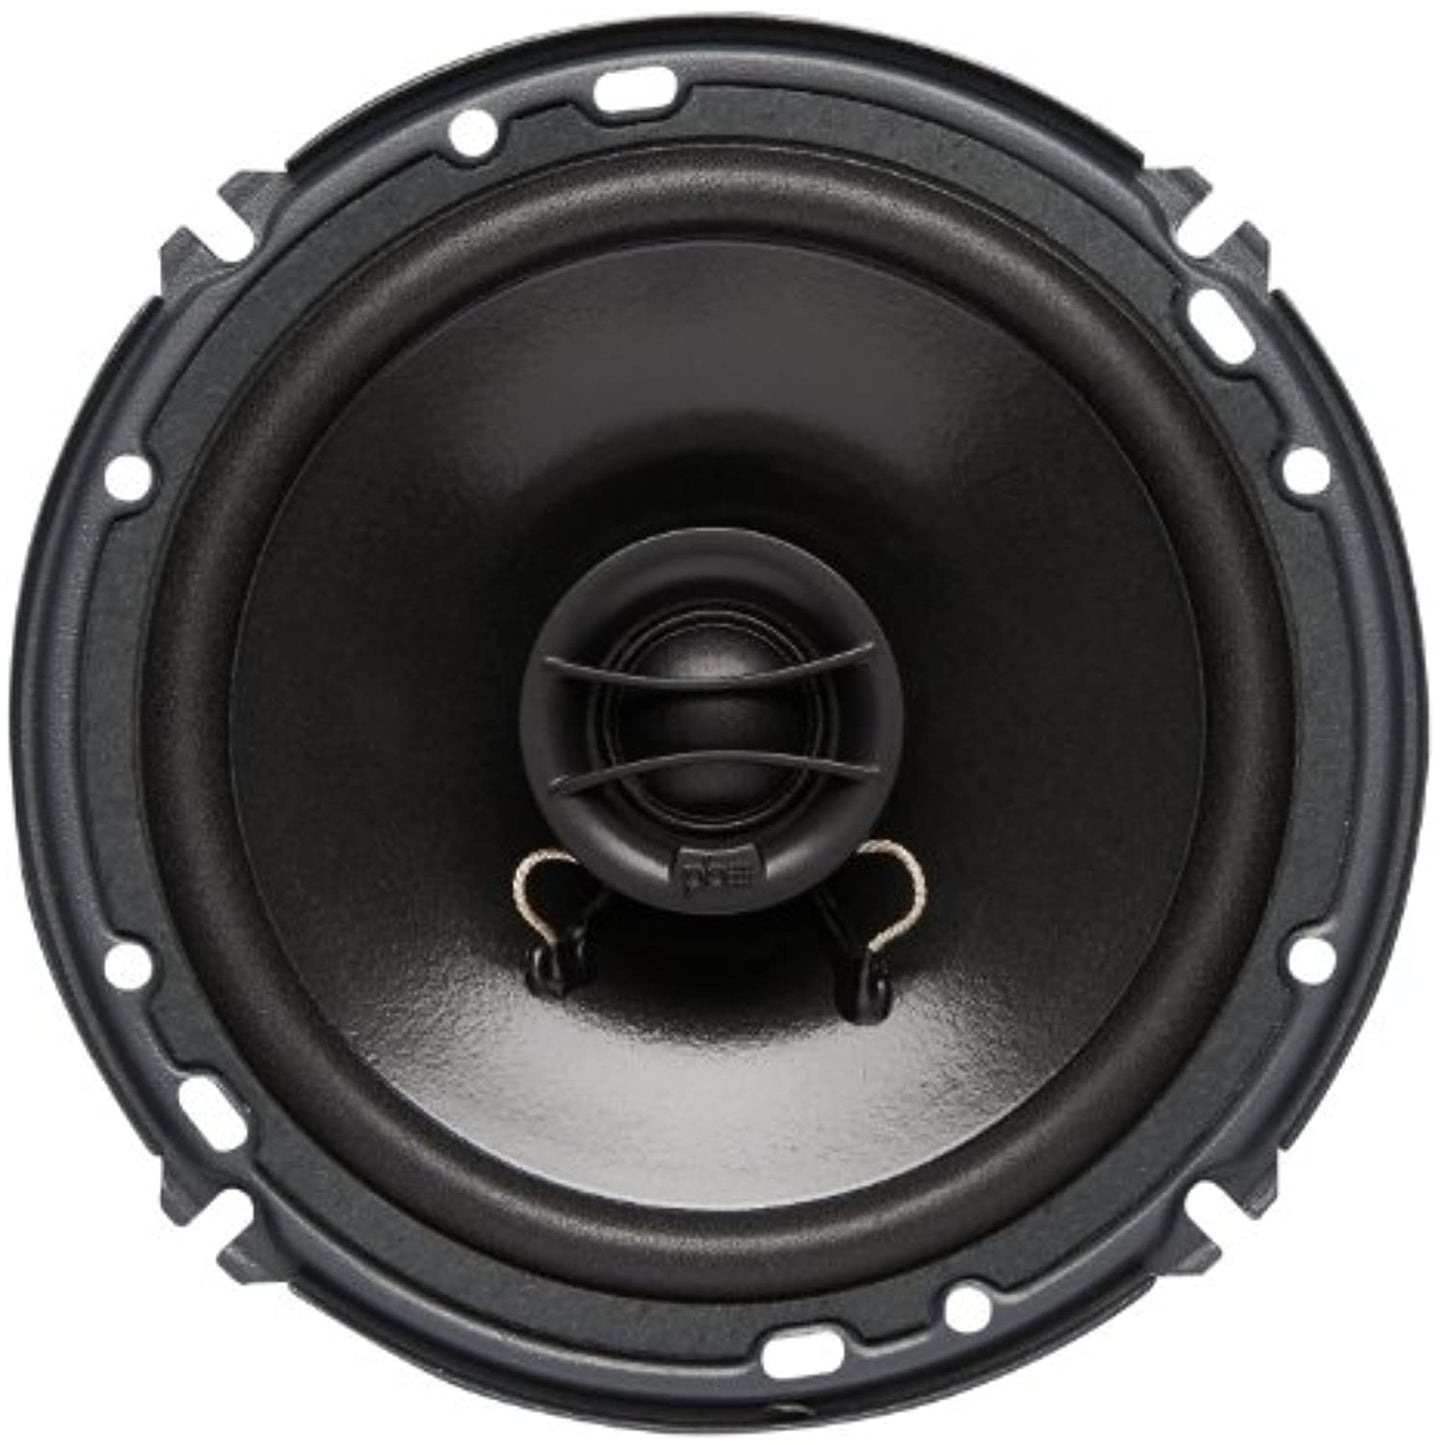 Powerbass S-Series Full Range 4 Ω 6.75" Speaker - Set of 2 (S6752),Black